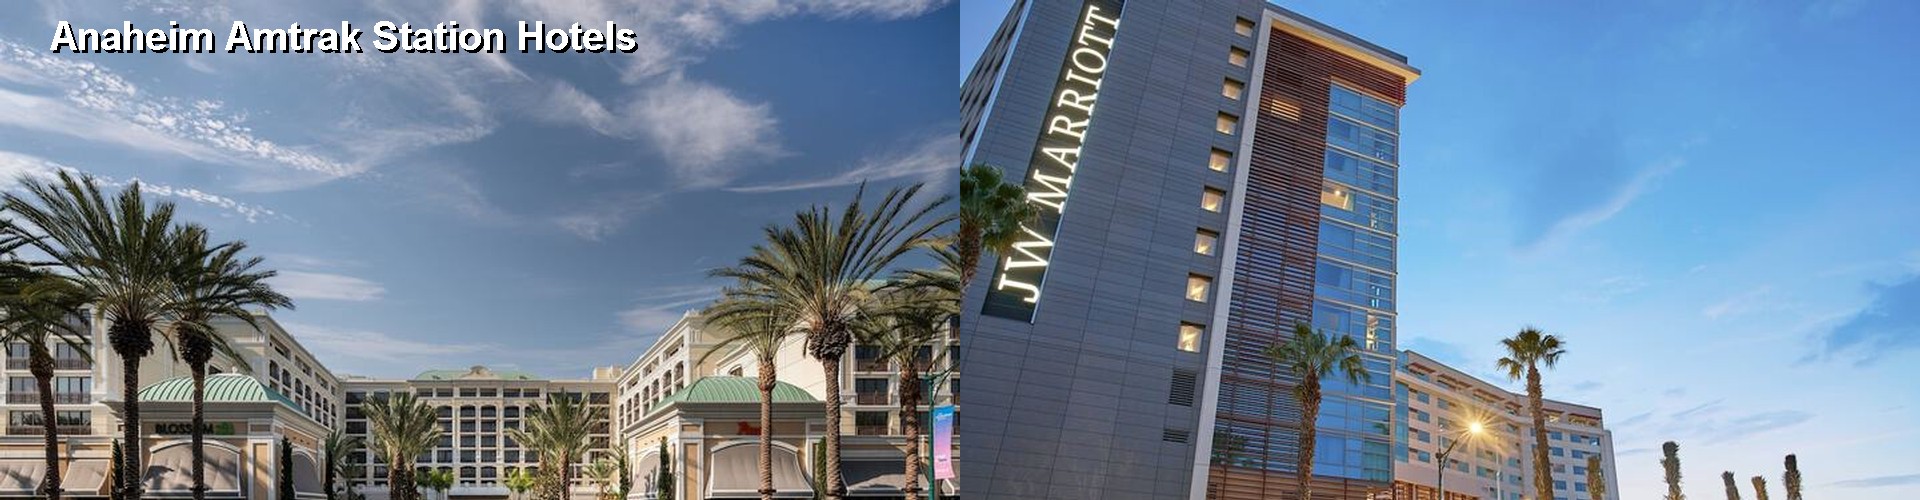 5 Best Hotels near Anaheim Amtrak Station